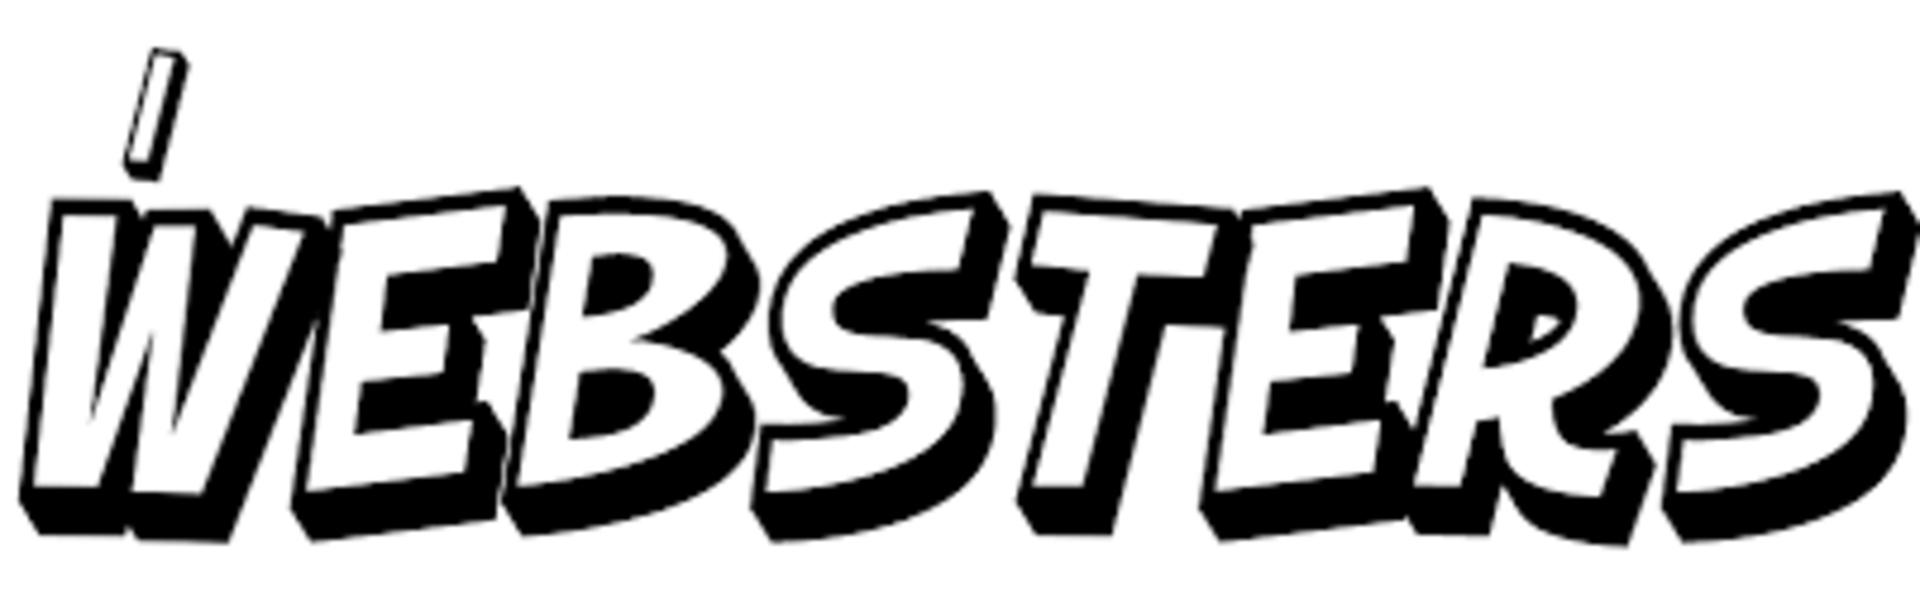 Il logotipo degli Websters (in lingua italiana)